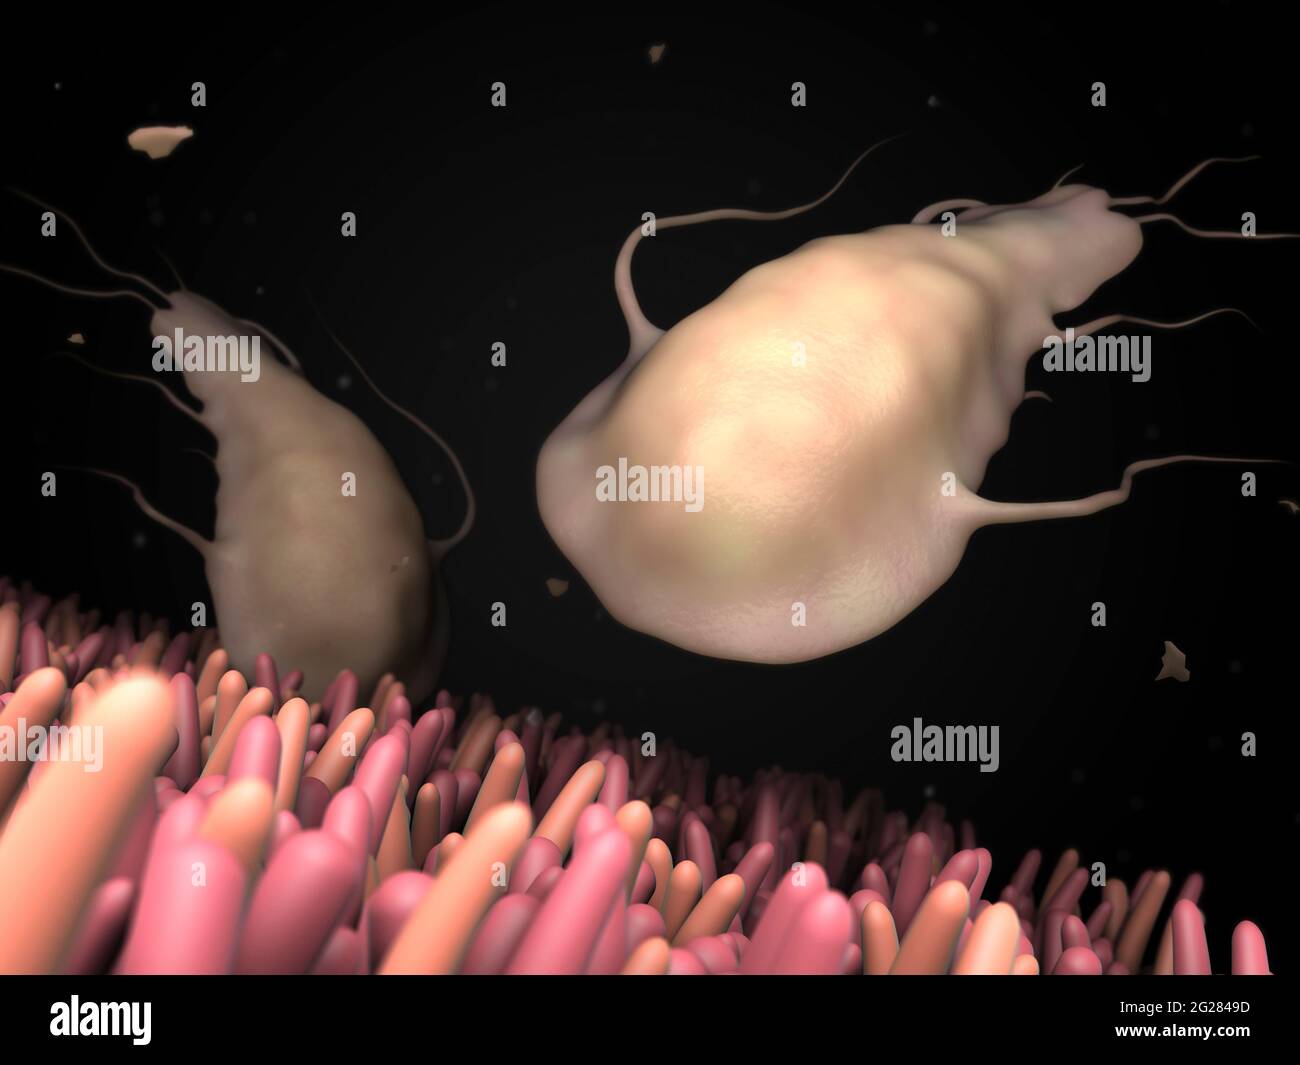 Ilustración biomédica del parásito Giardia dentro de los intestinos humanos. Foto de stock